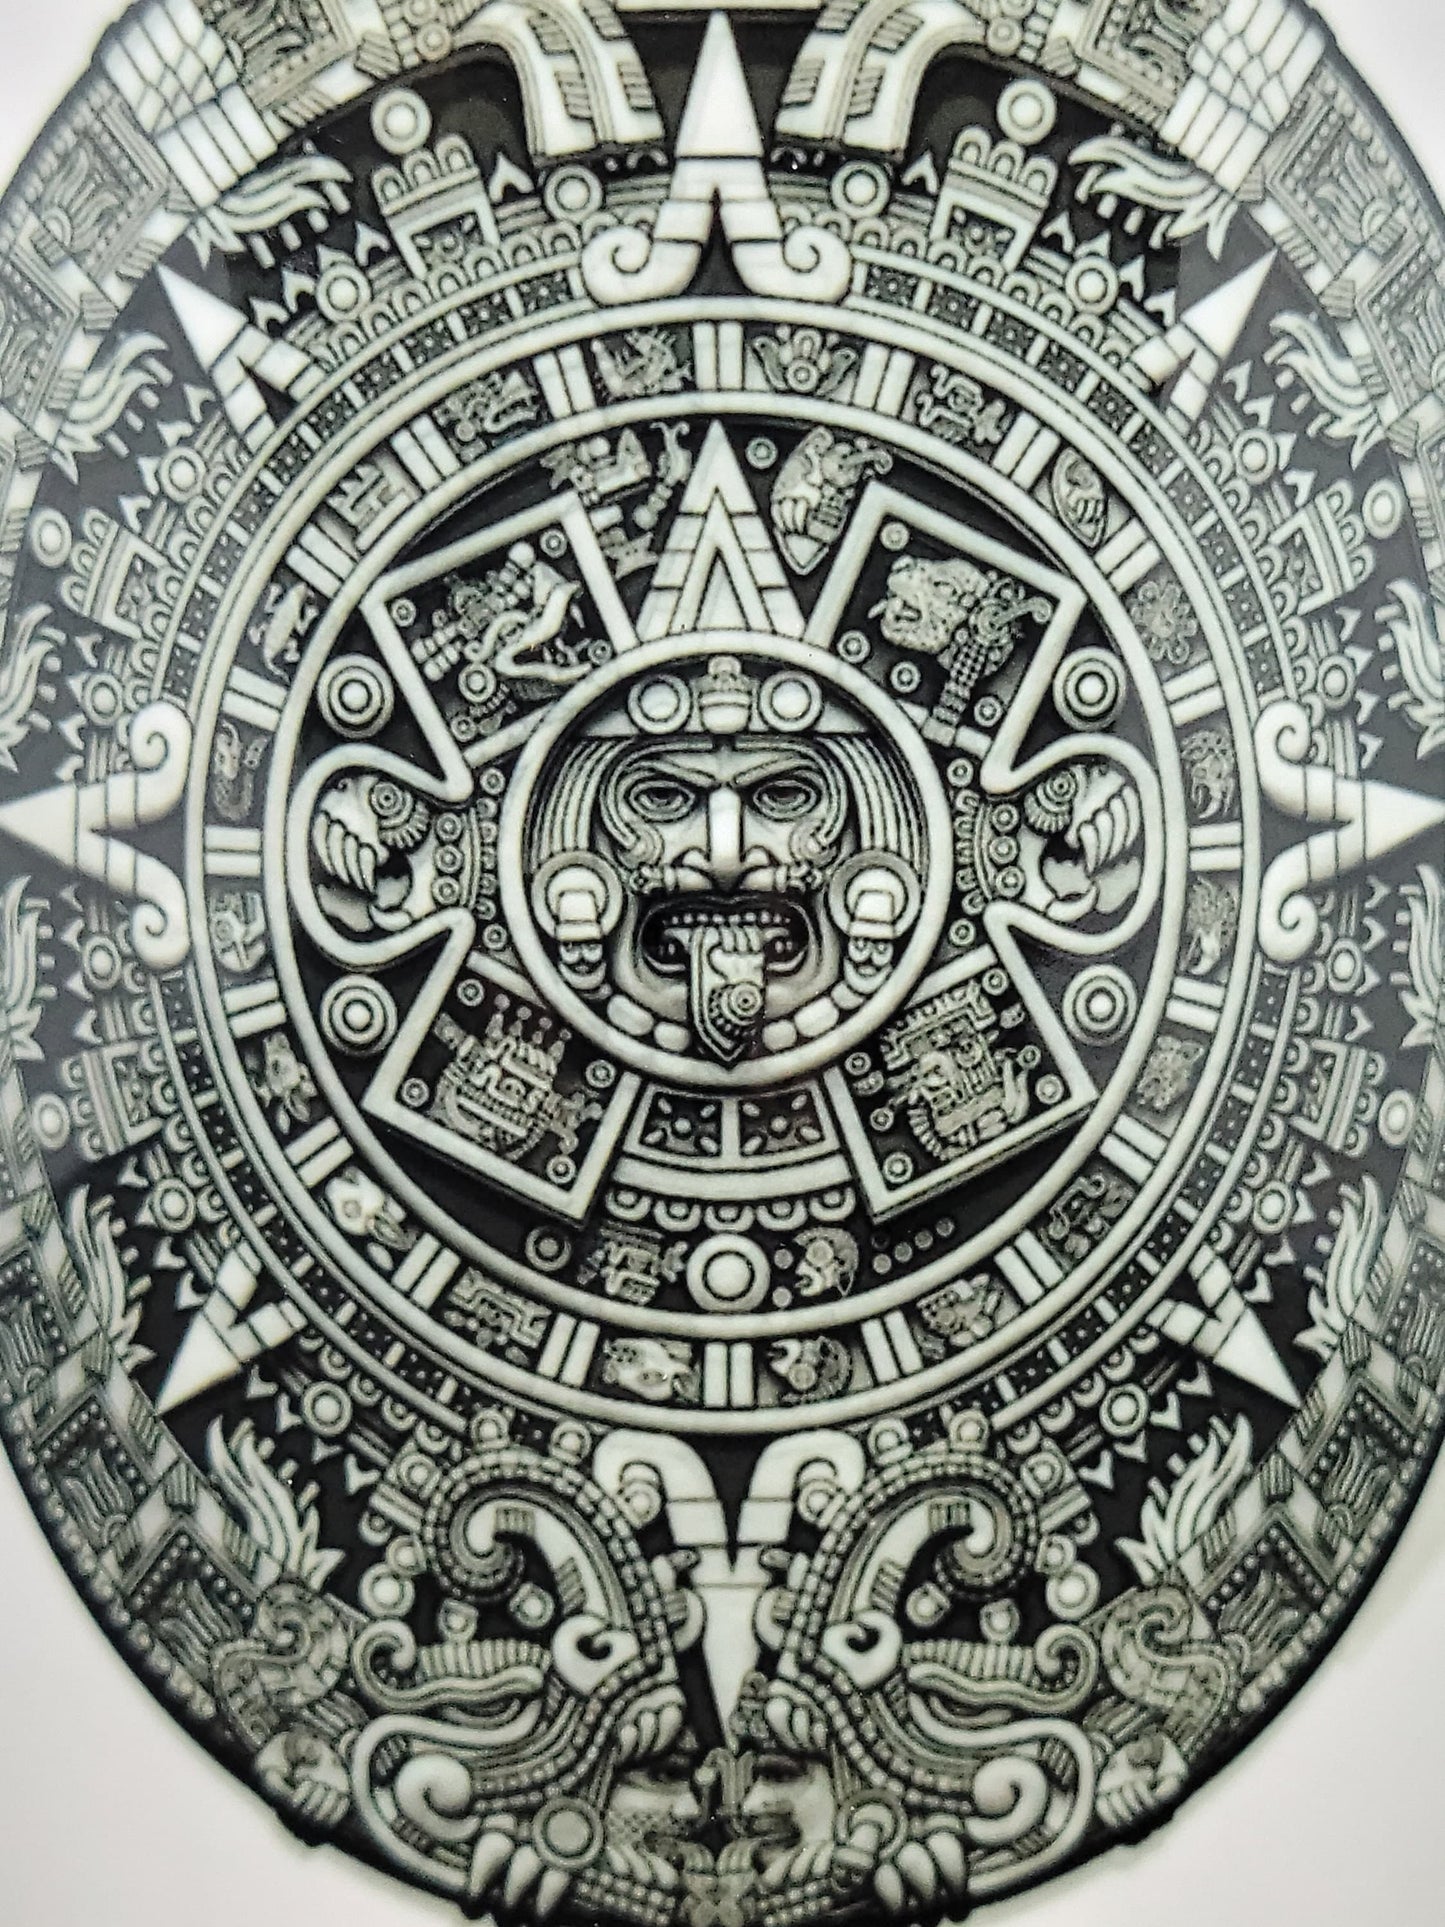 Aztec Calendar Mug: Ceramic Coffee Mug with Pyramid Graphic